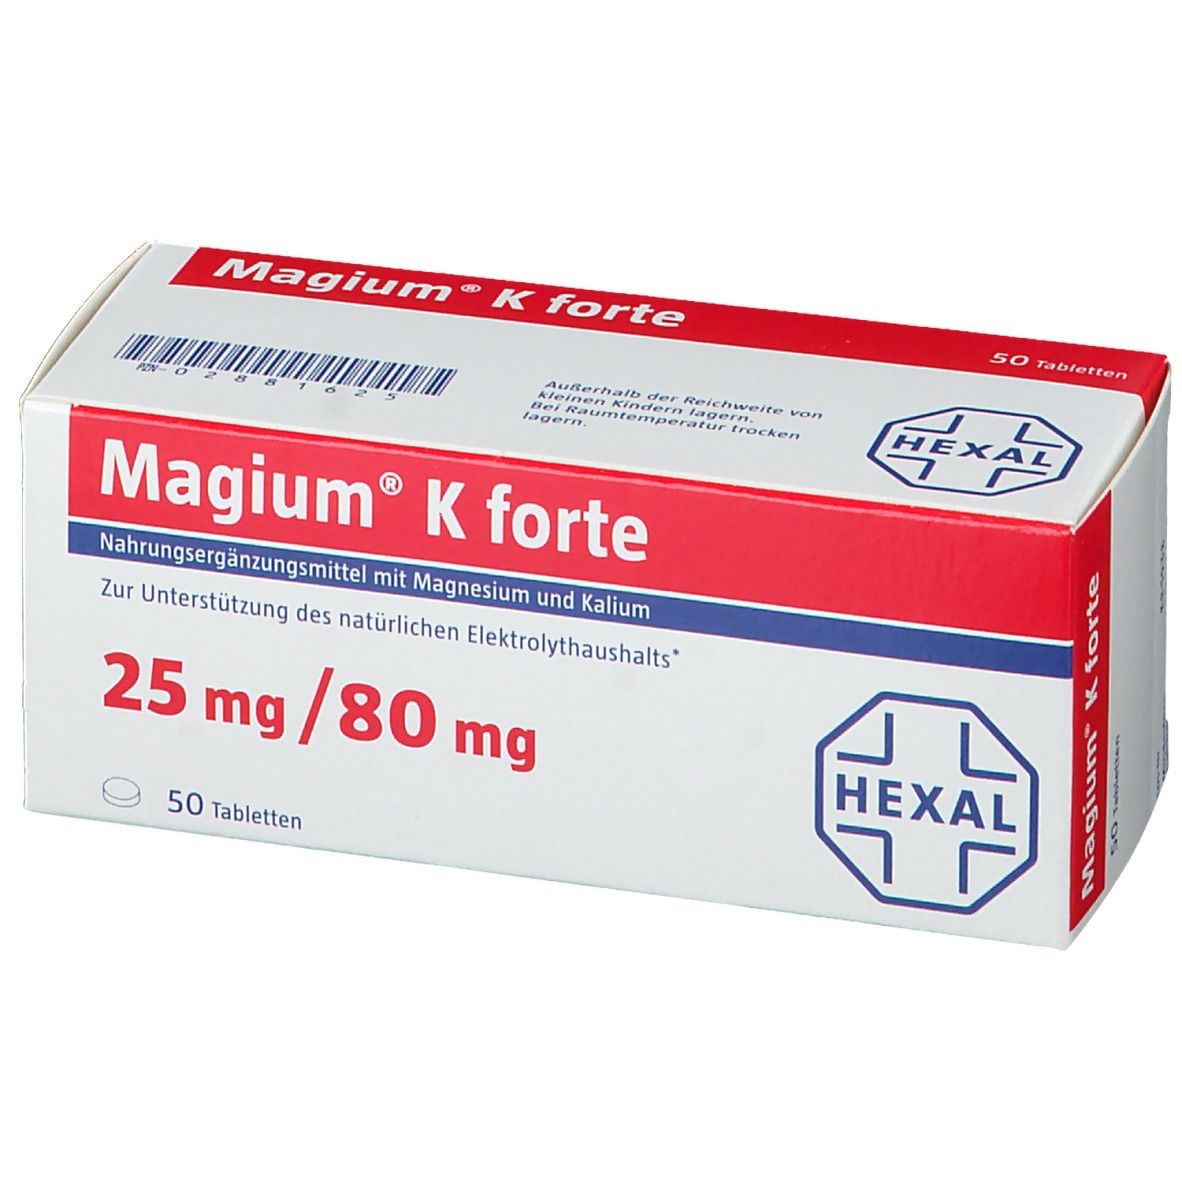 Magium® K forte